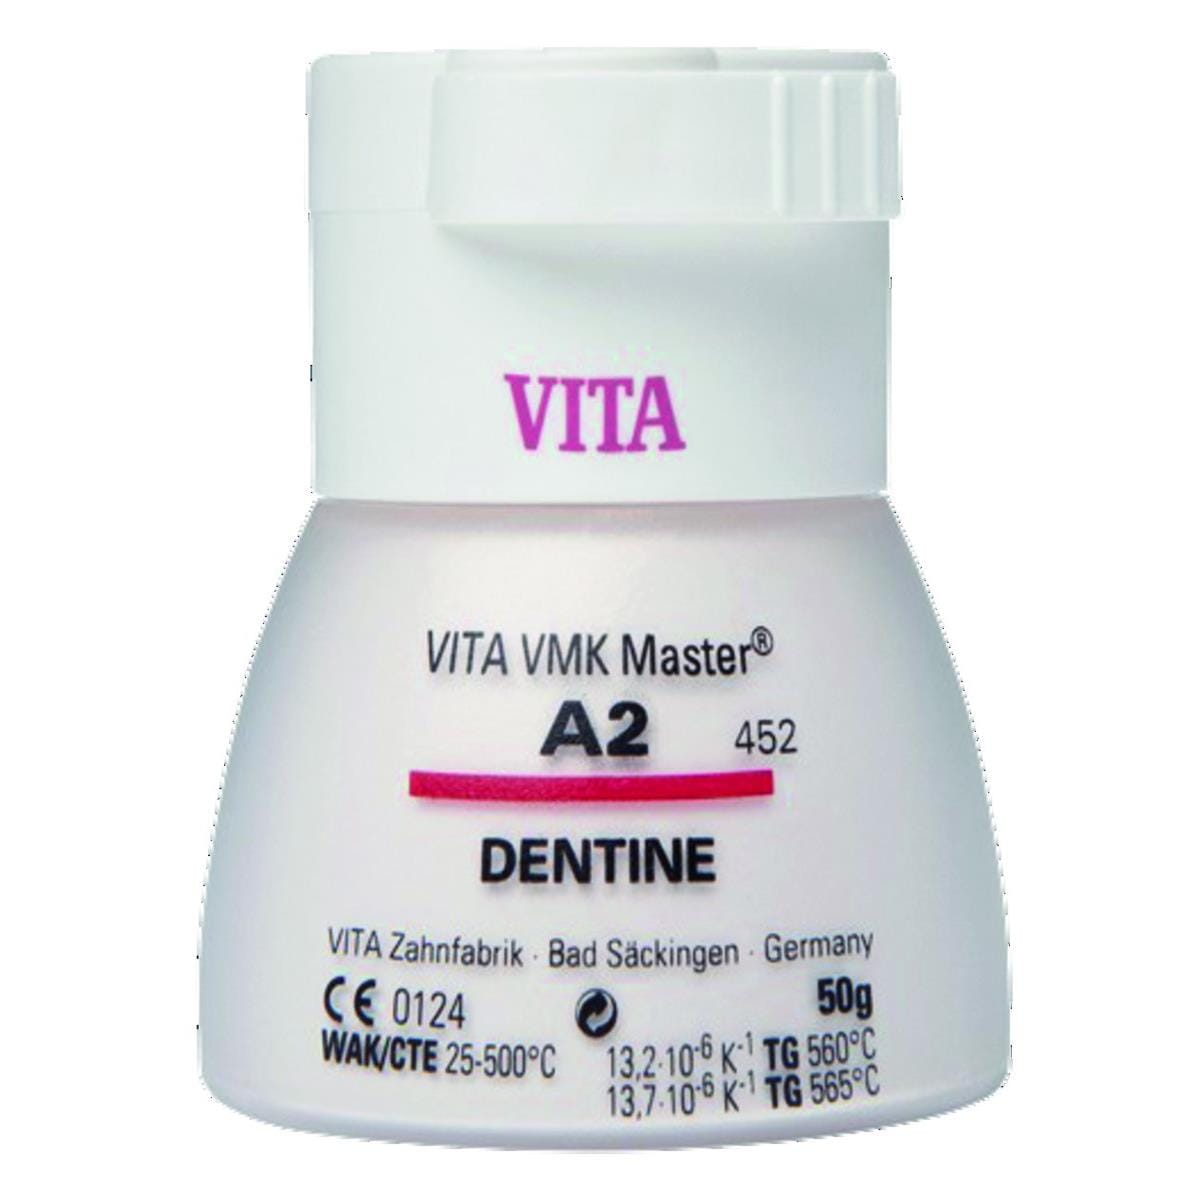 VMK Master VITA - Dentine - 4M1 - Le flacon de 50 g